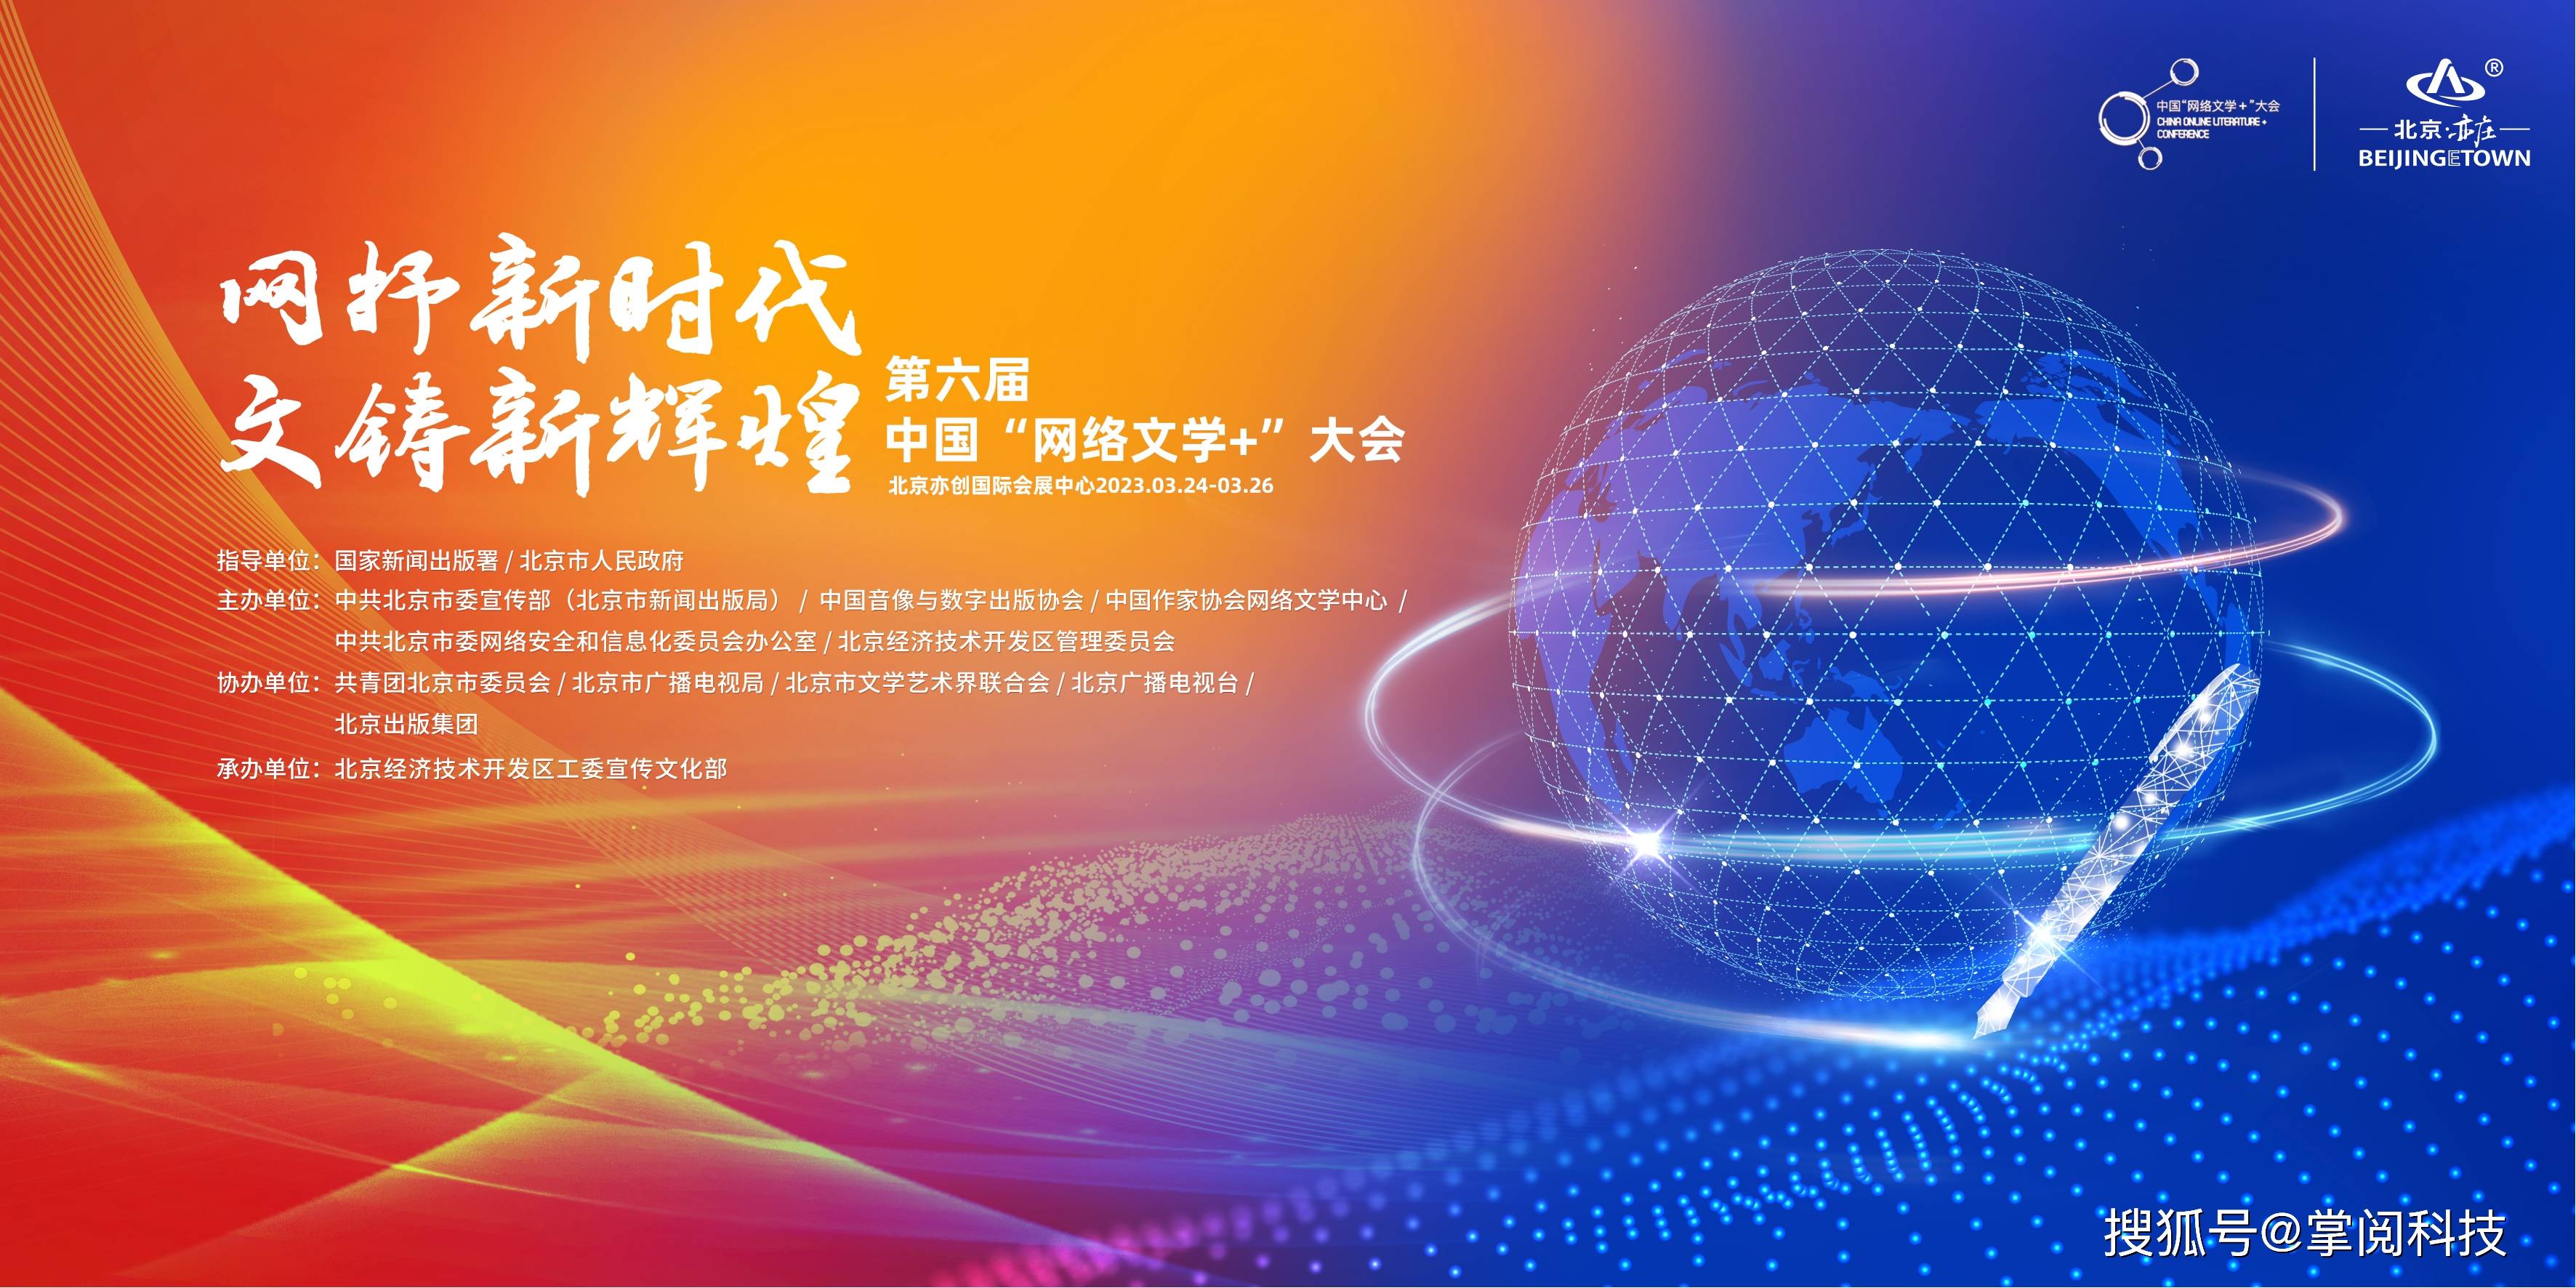 豆瓣阅读app苹果版
:第六届中国“网络文学+”大会观众预约指南